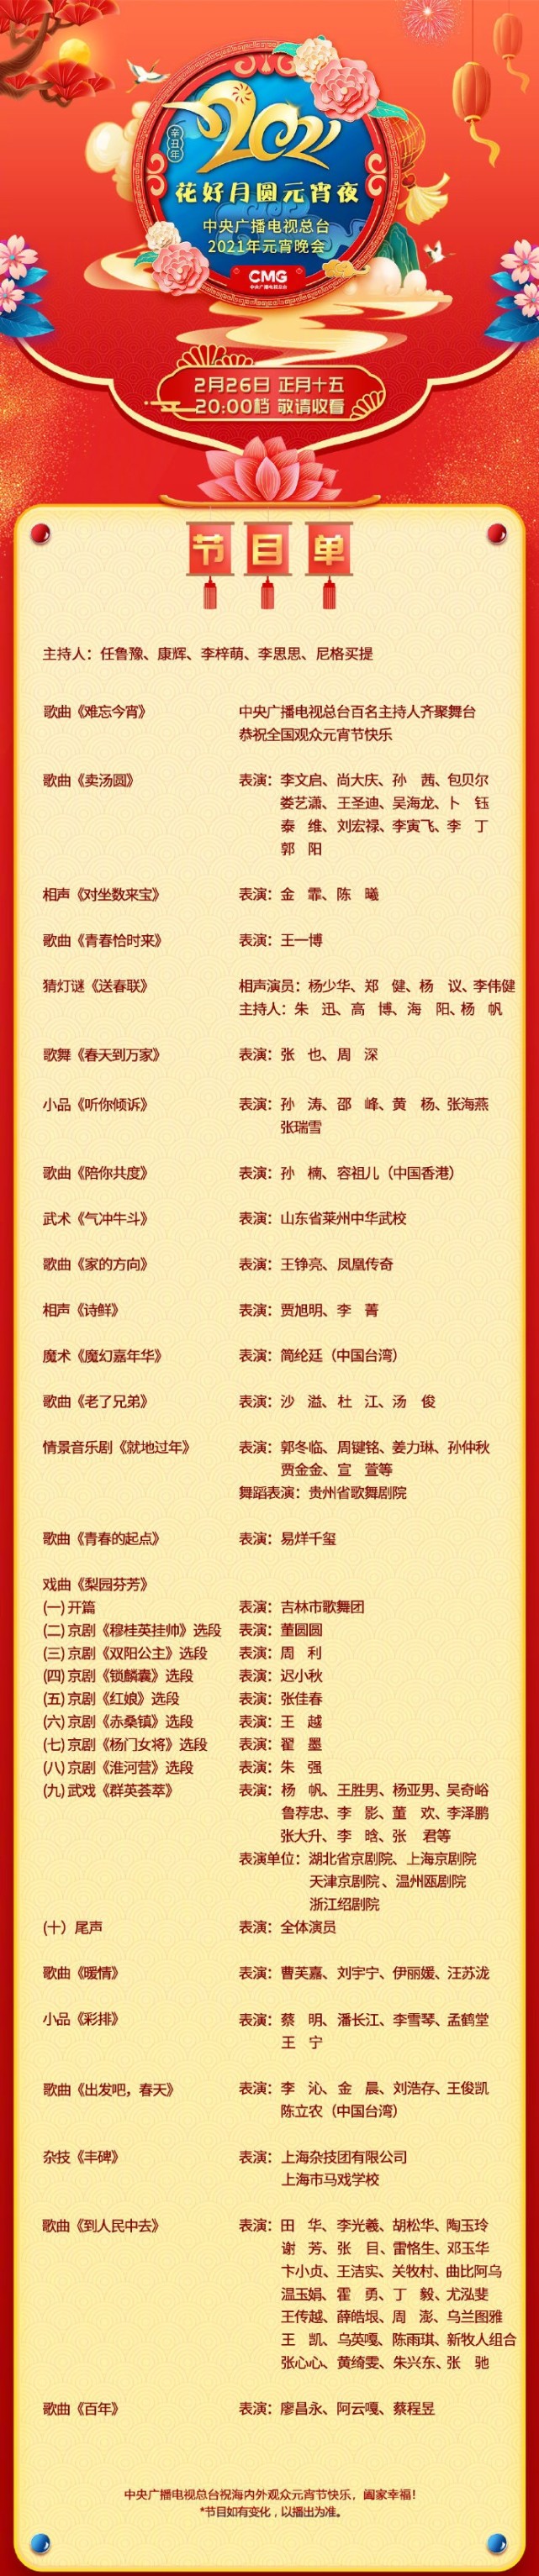 央视元宵晚会节目单:王一博,易烊千玺独唱,潘长江和蔡明演小品